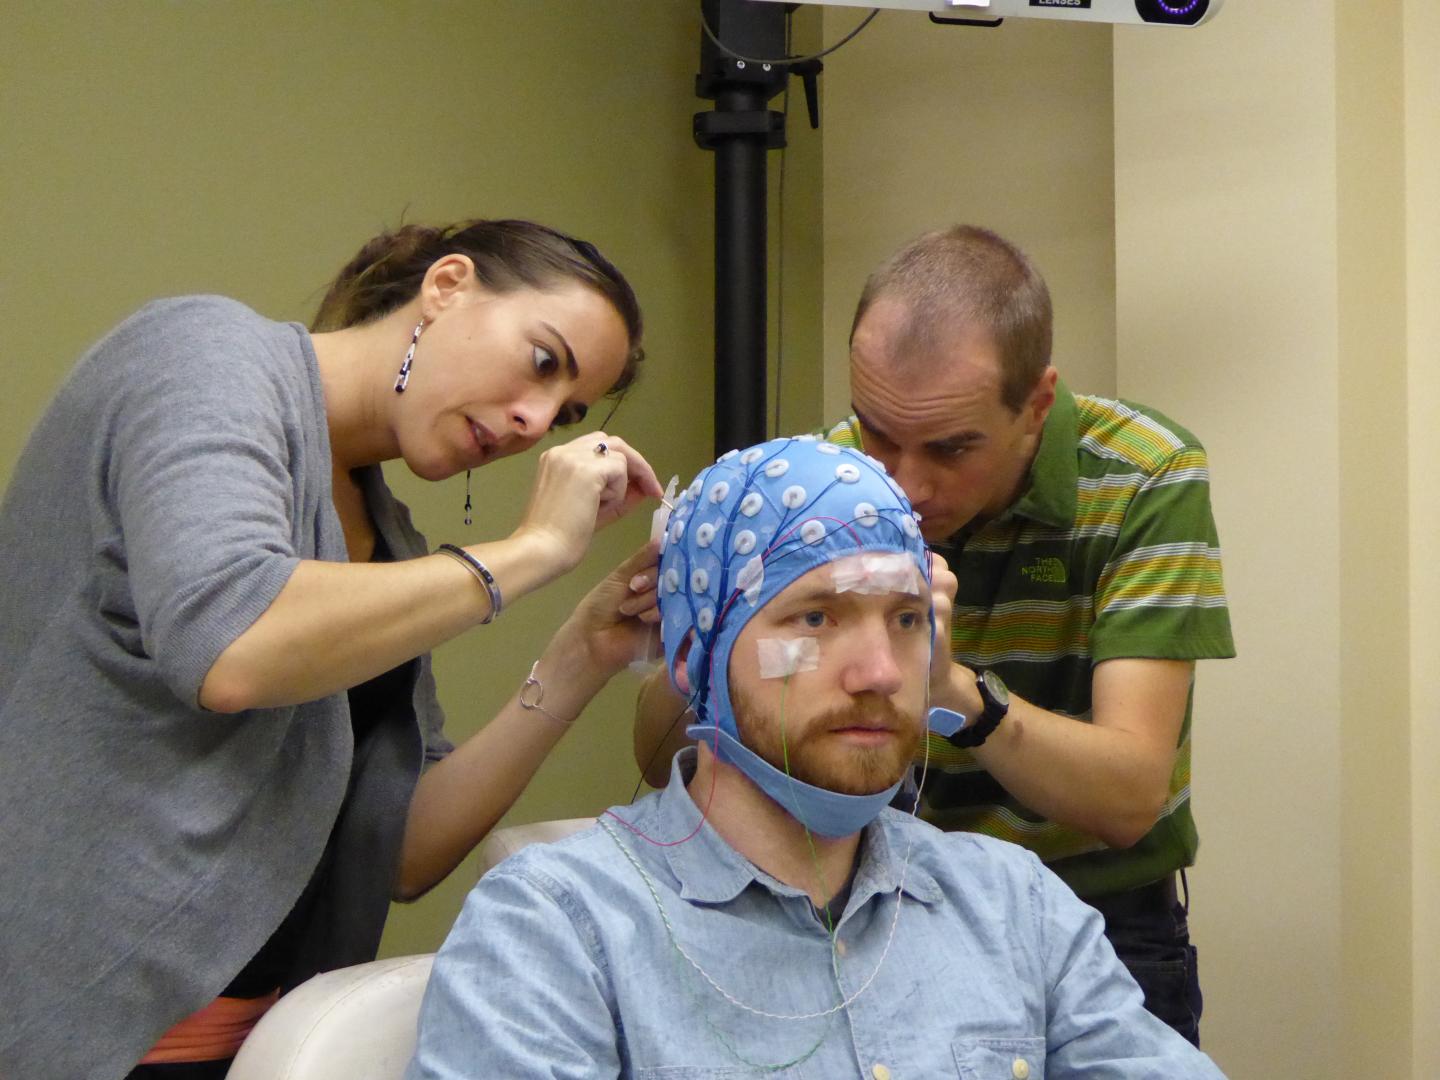 TMS-EEG (1 of 2)